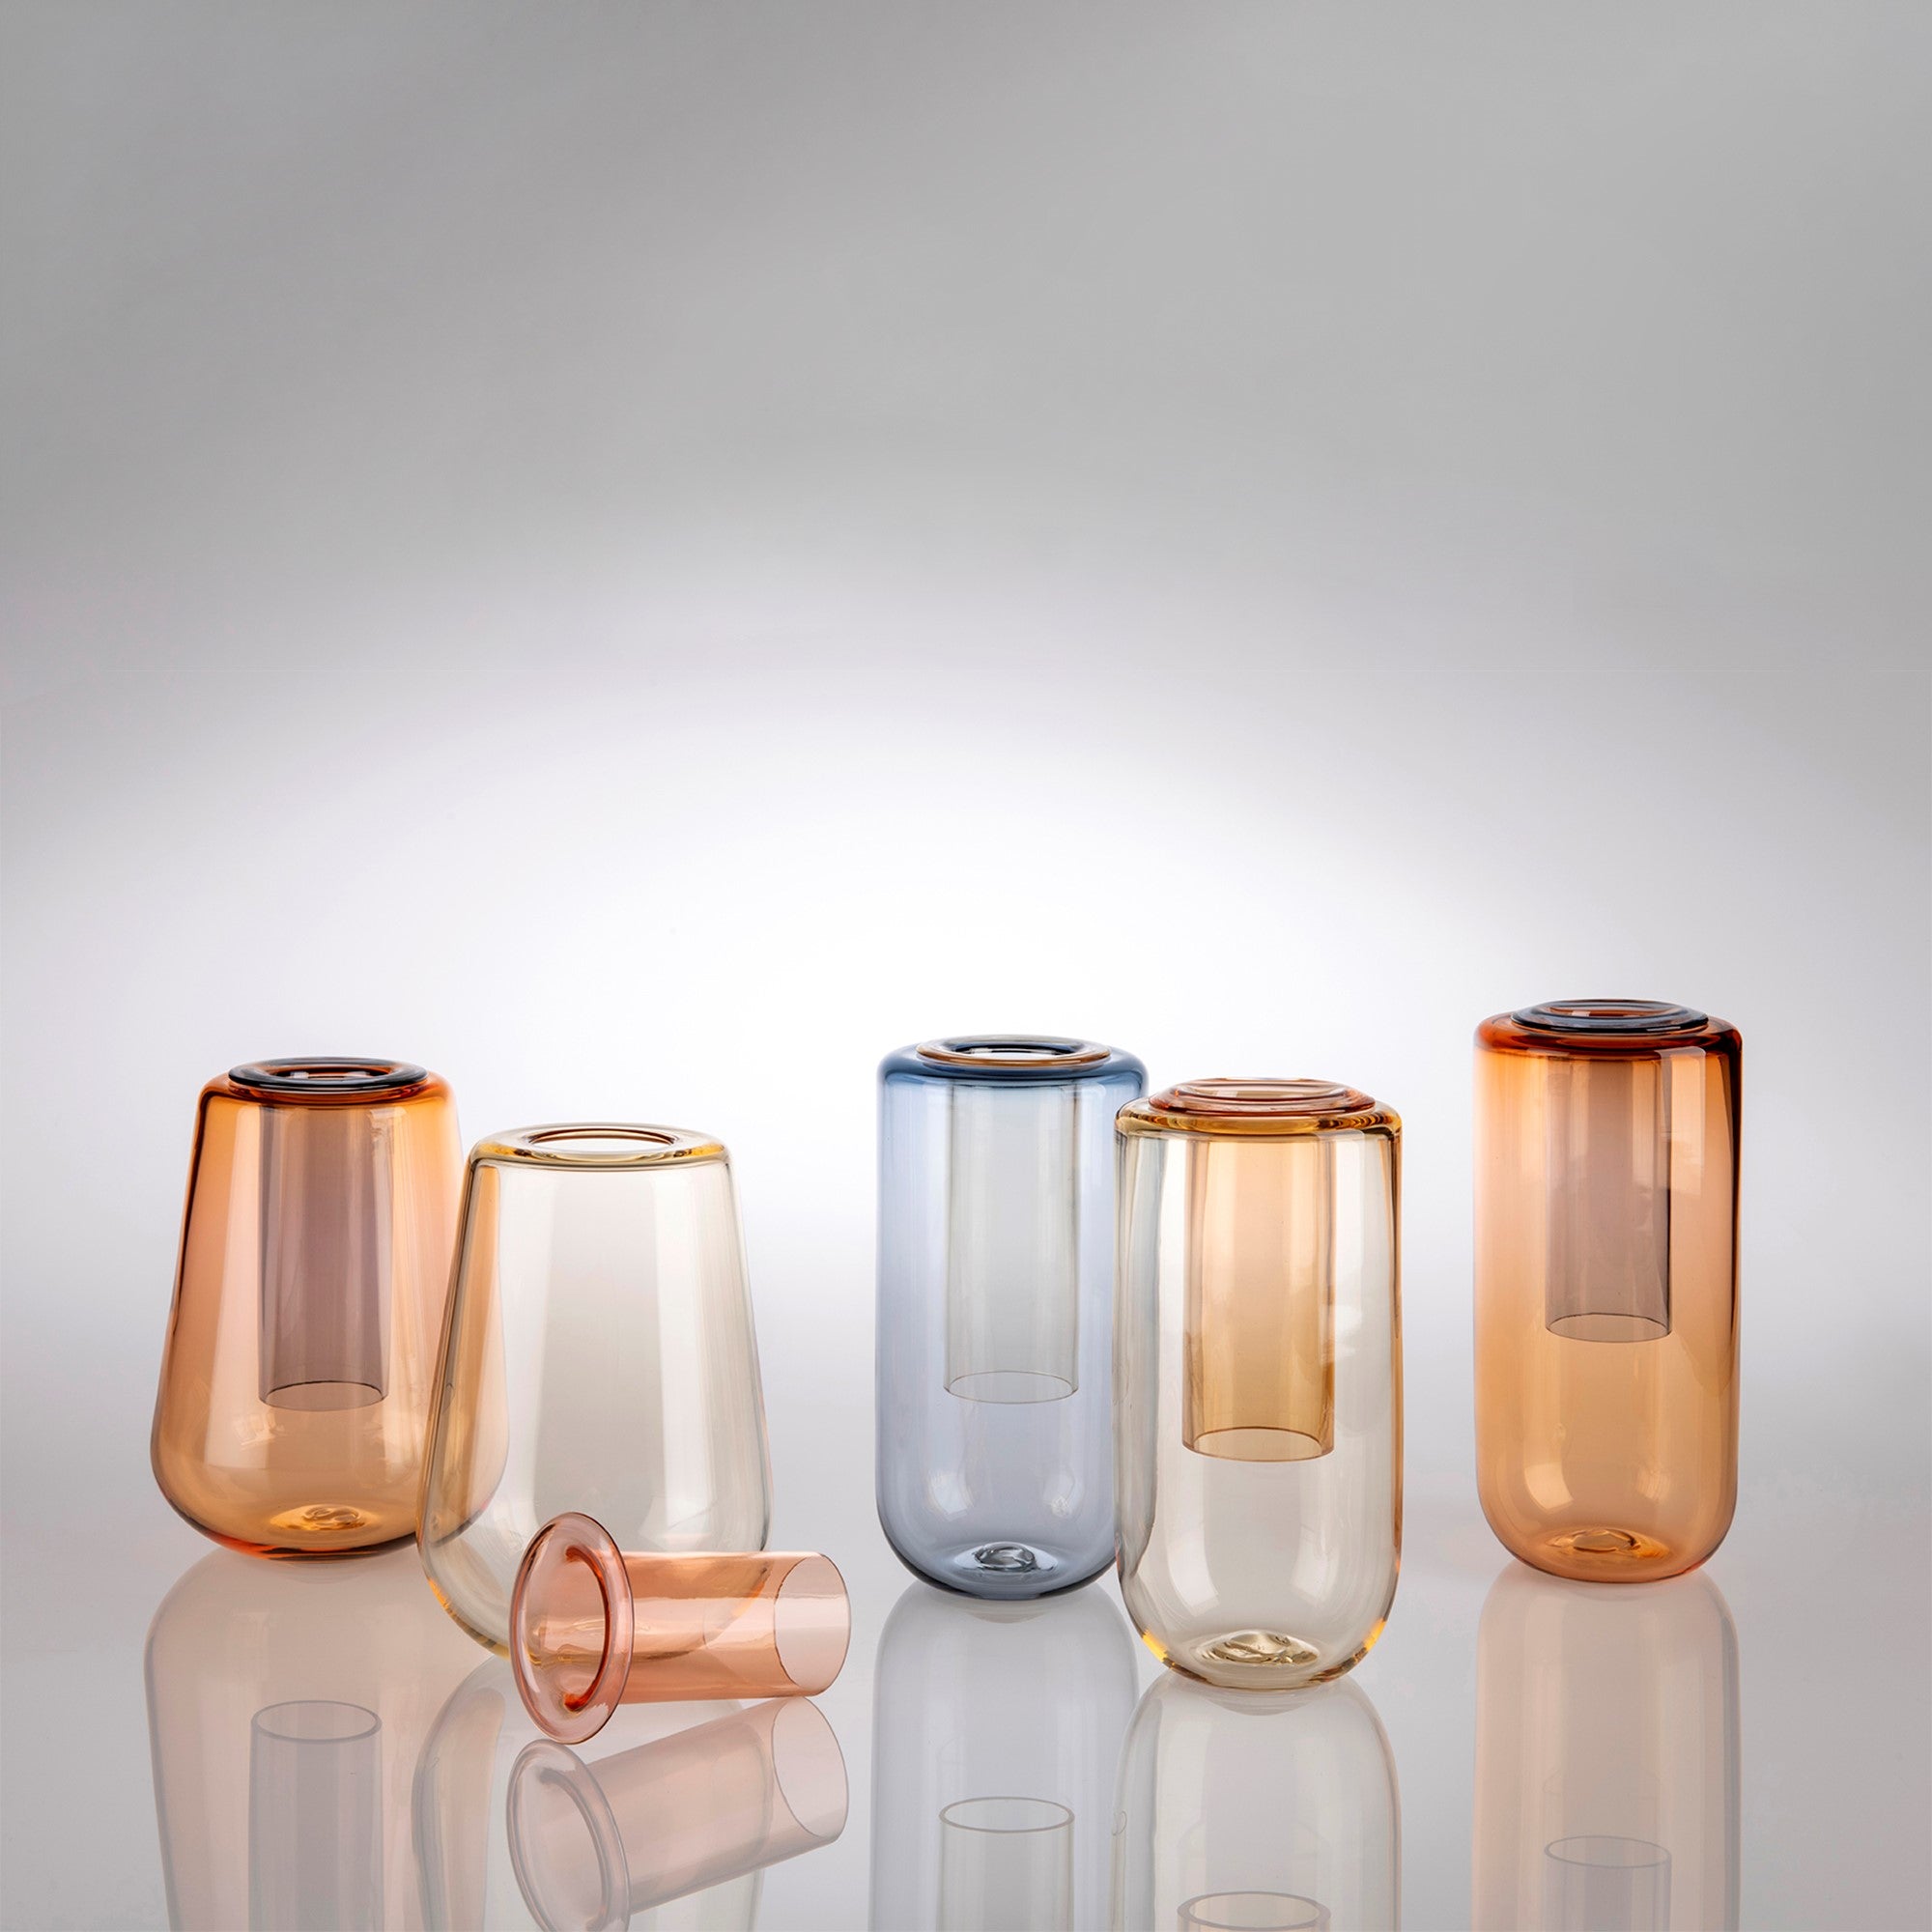 Lewis Batchelar - Chroma Vase Group